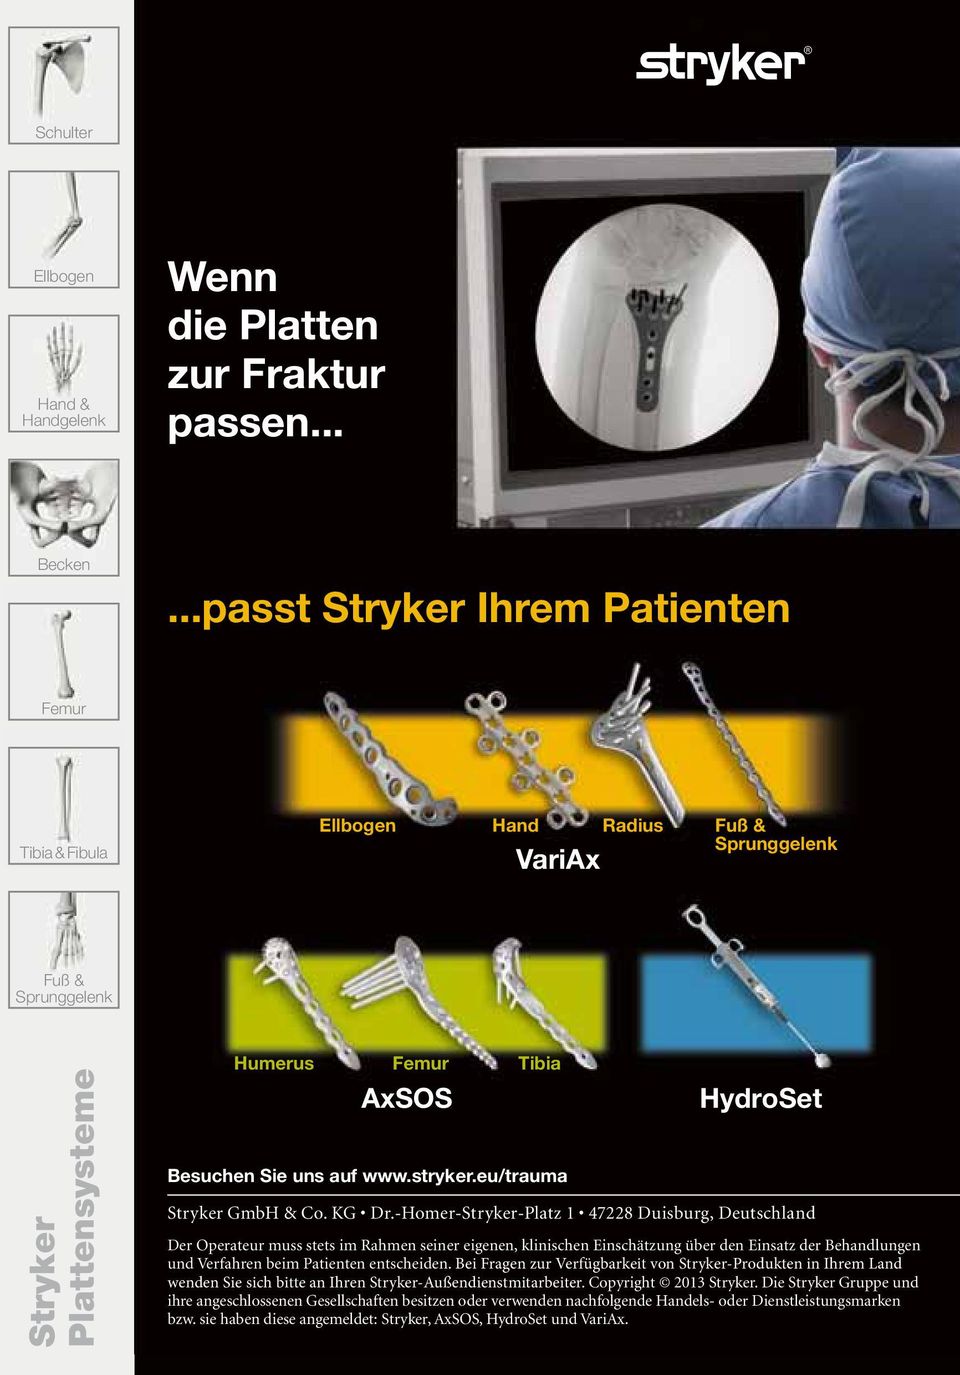 stryker.eu/trauma HydroSet Stryker GmbH & Co. KG Dr.